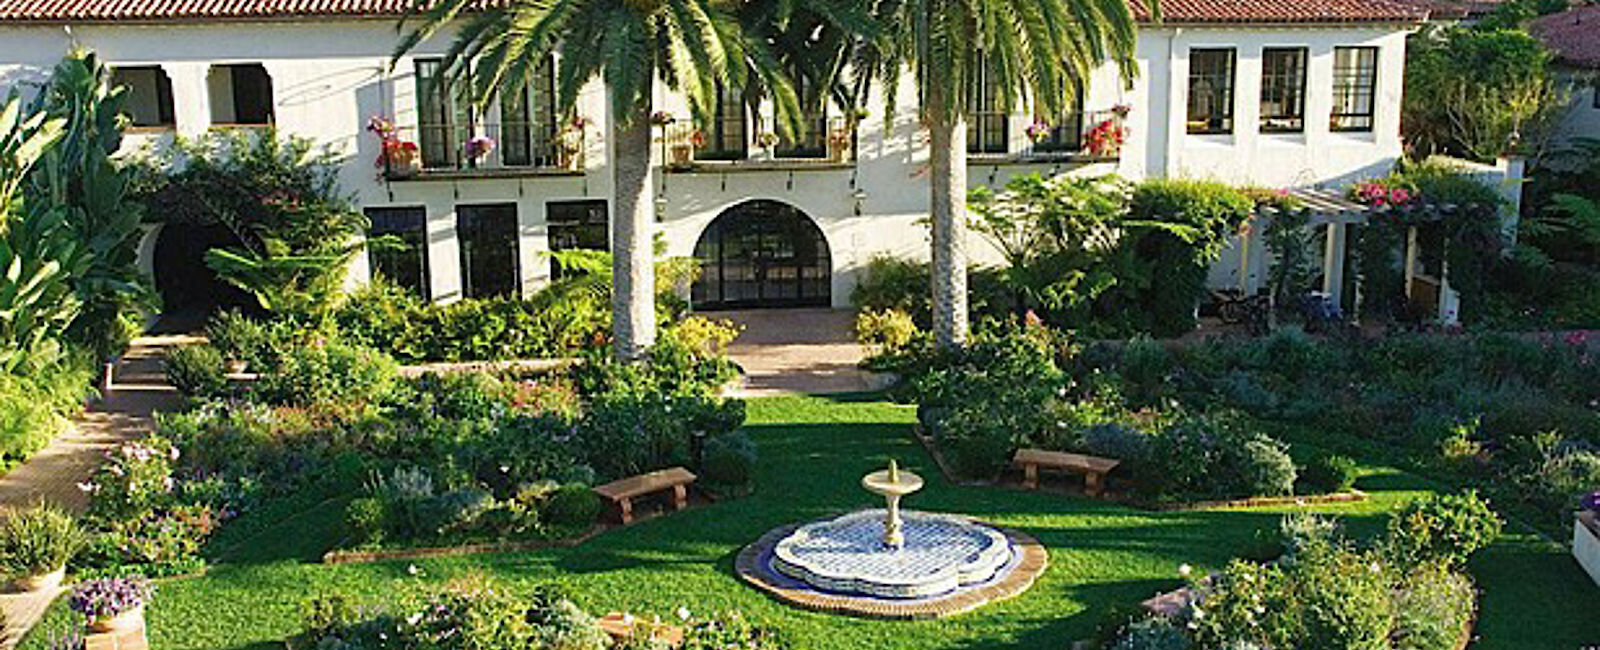 HOTEL TIPPS
 Four Seasons Resort The Biltmore Santa Barbara 
 Exquisites Hotel für die ganze Familie 